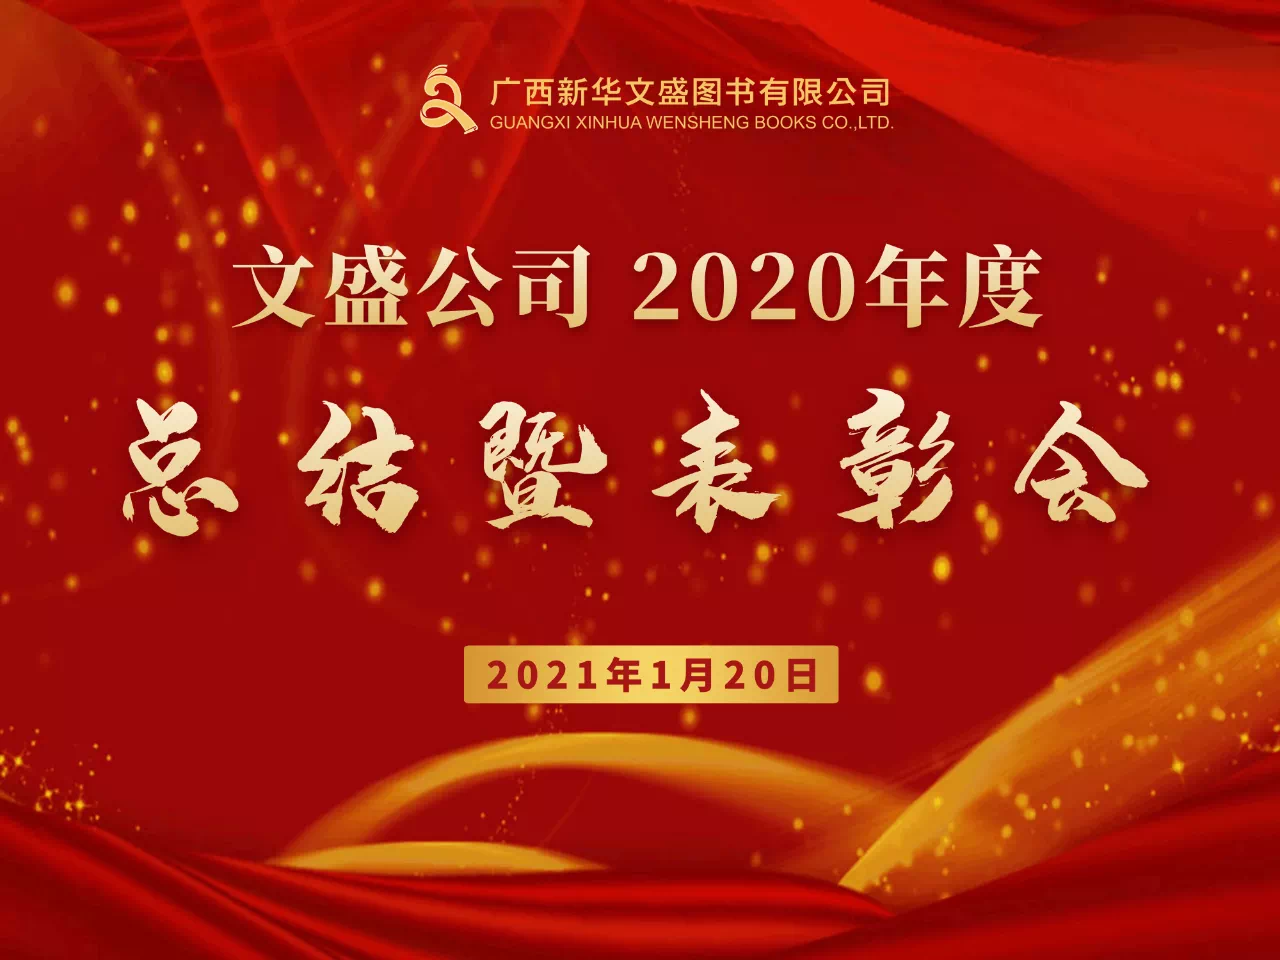 团结奋进，砥砺前行——广西新华文盛图书有限公司召开2020年度总结表彰会